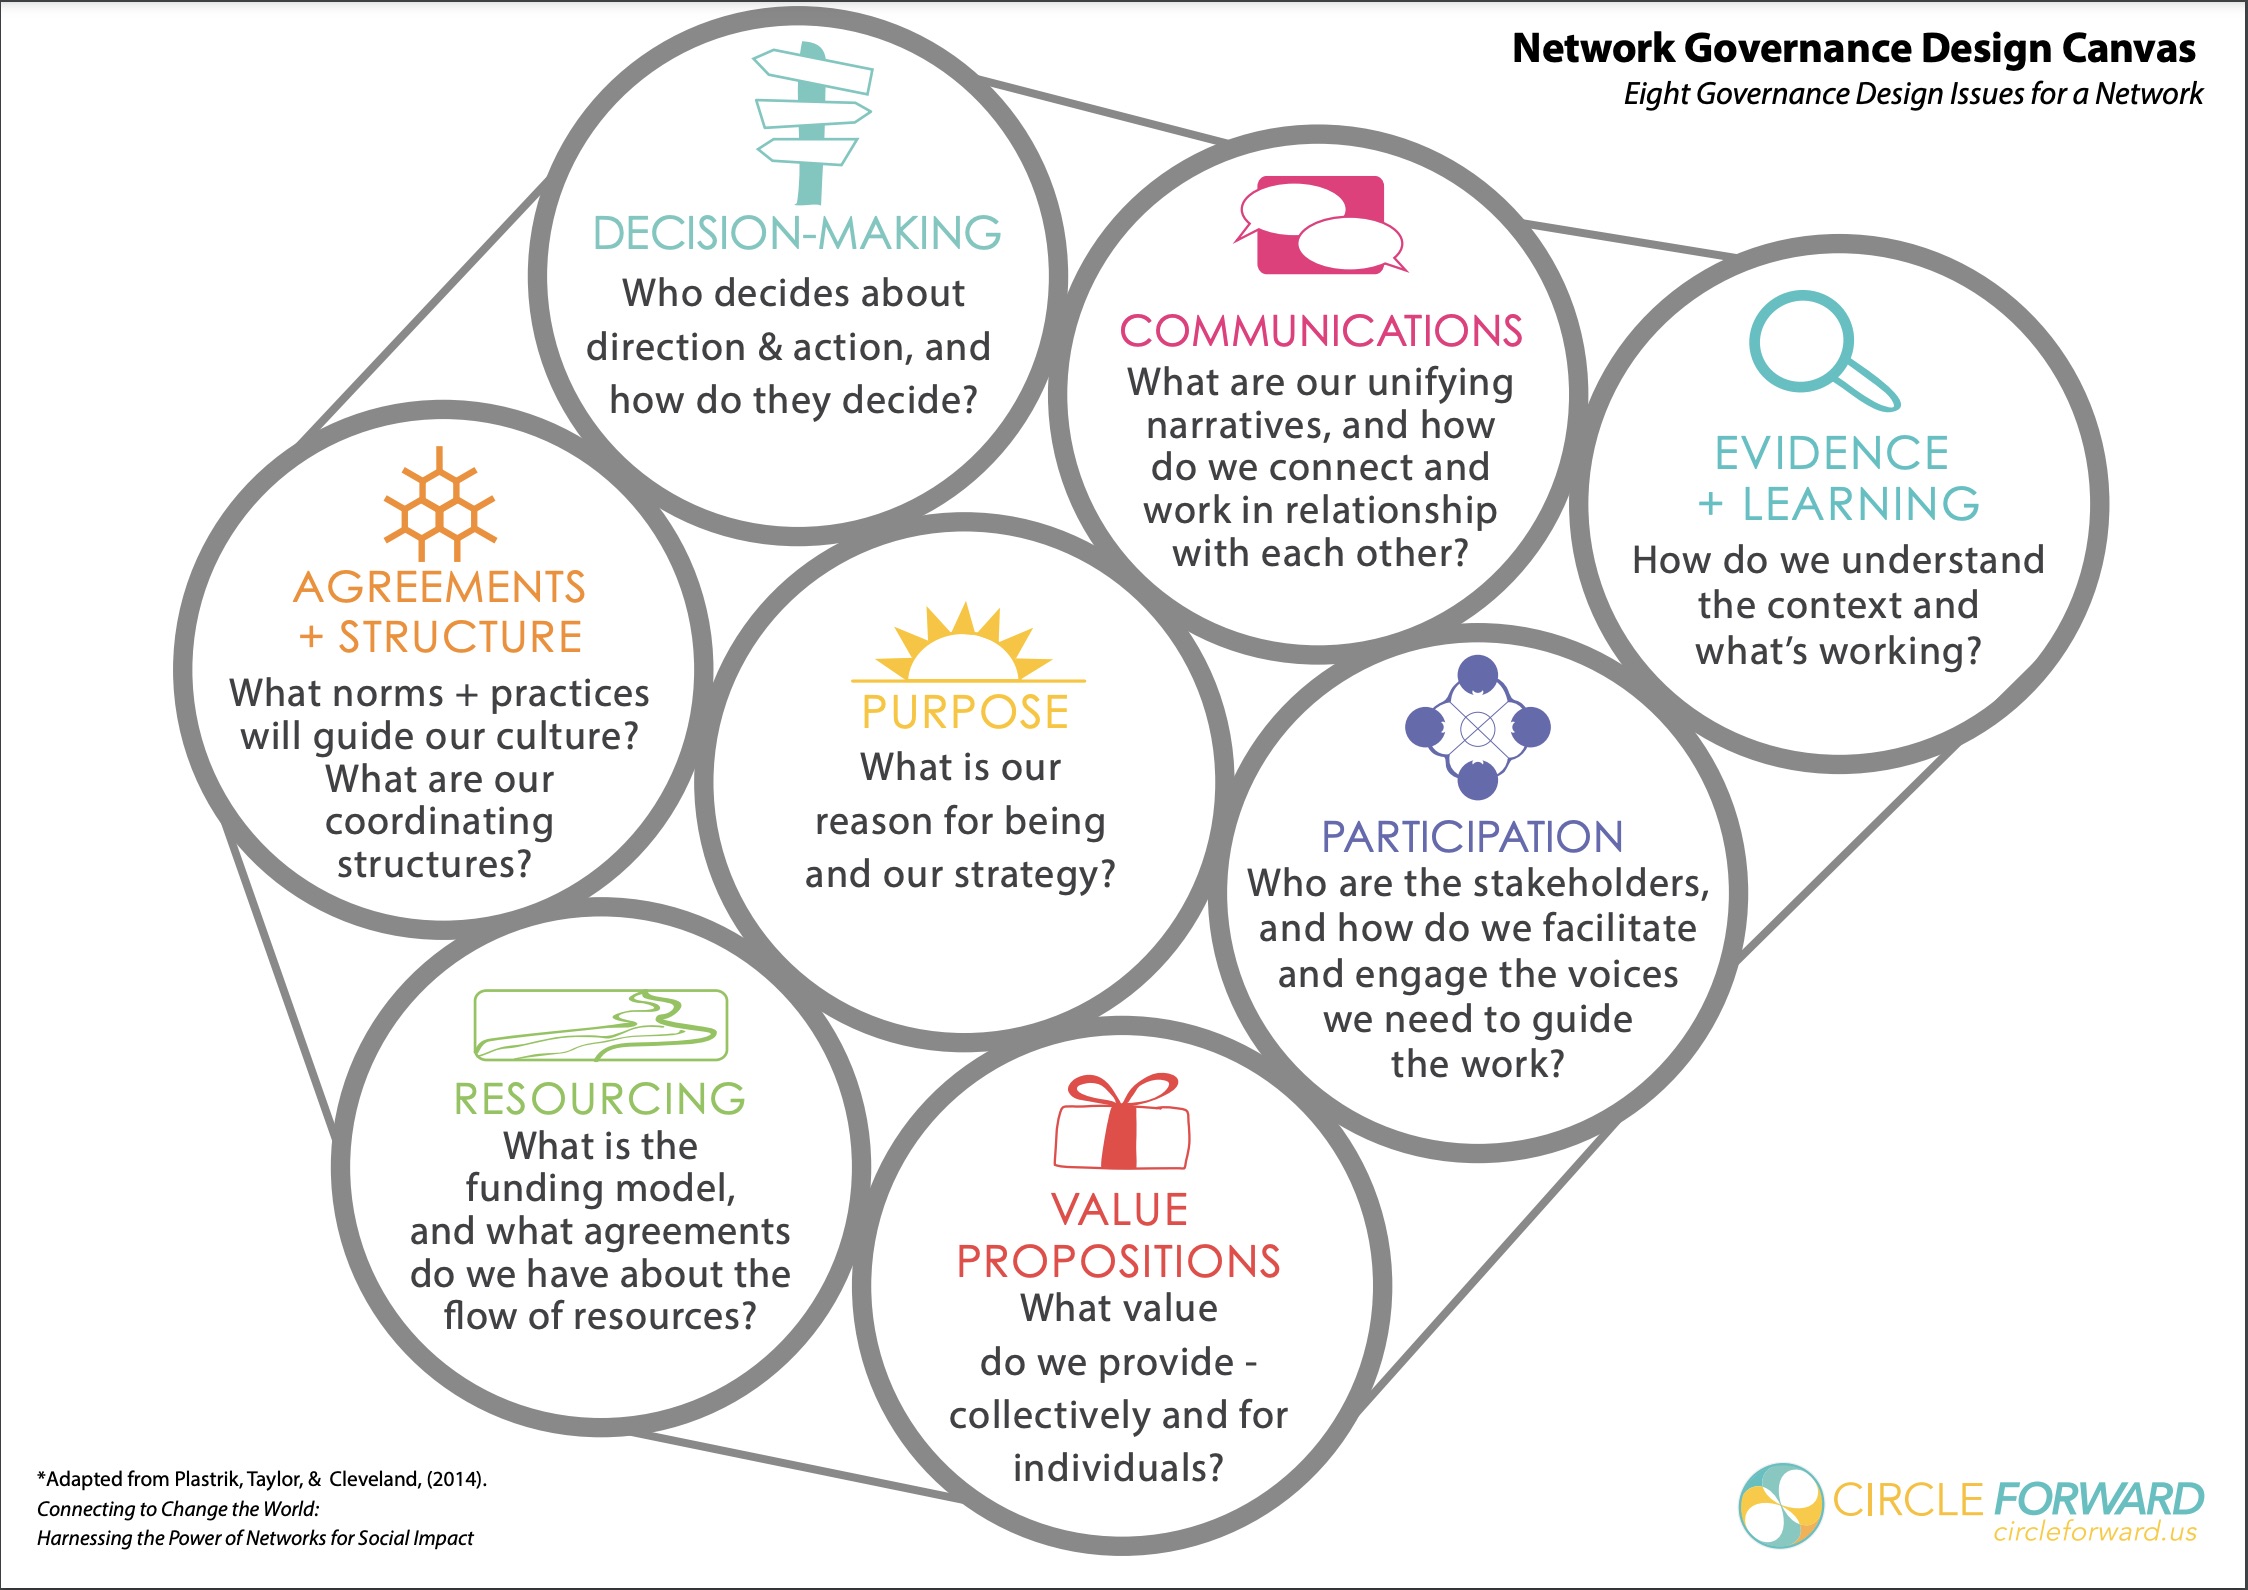 collaborative governance